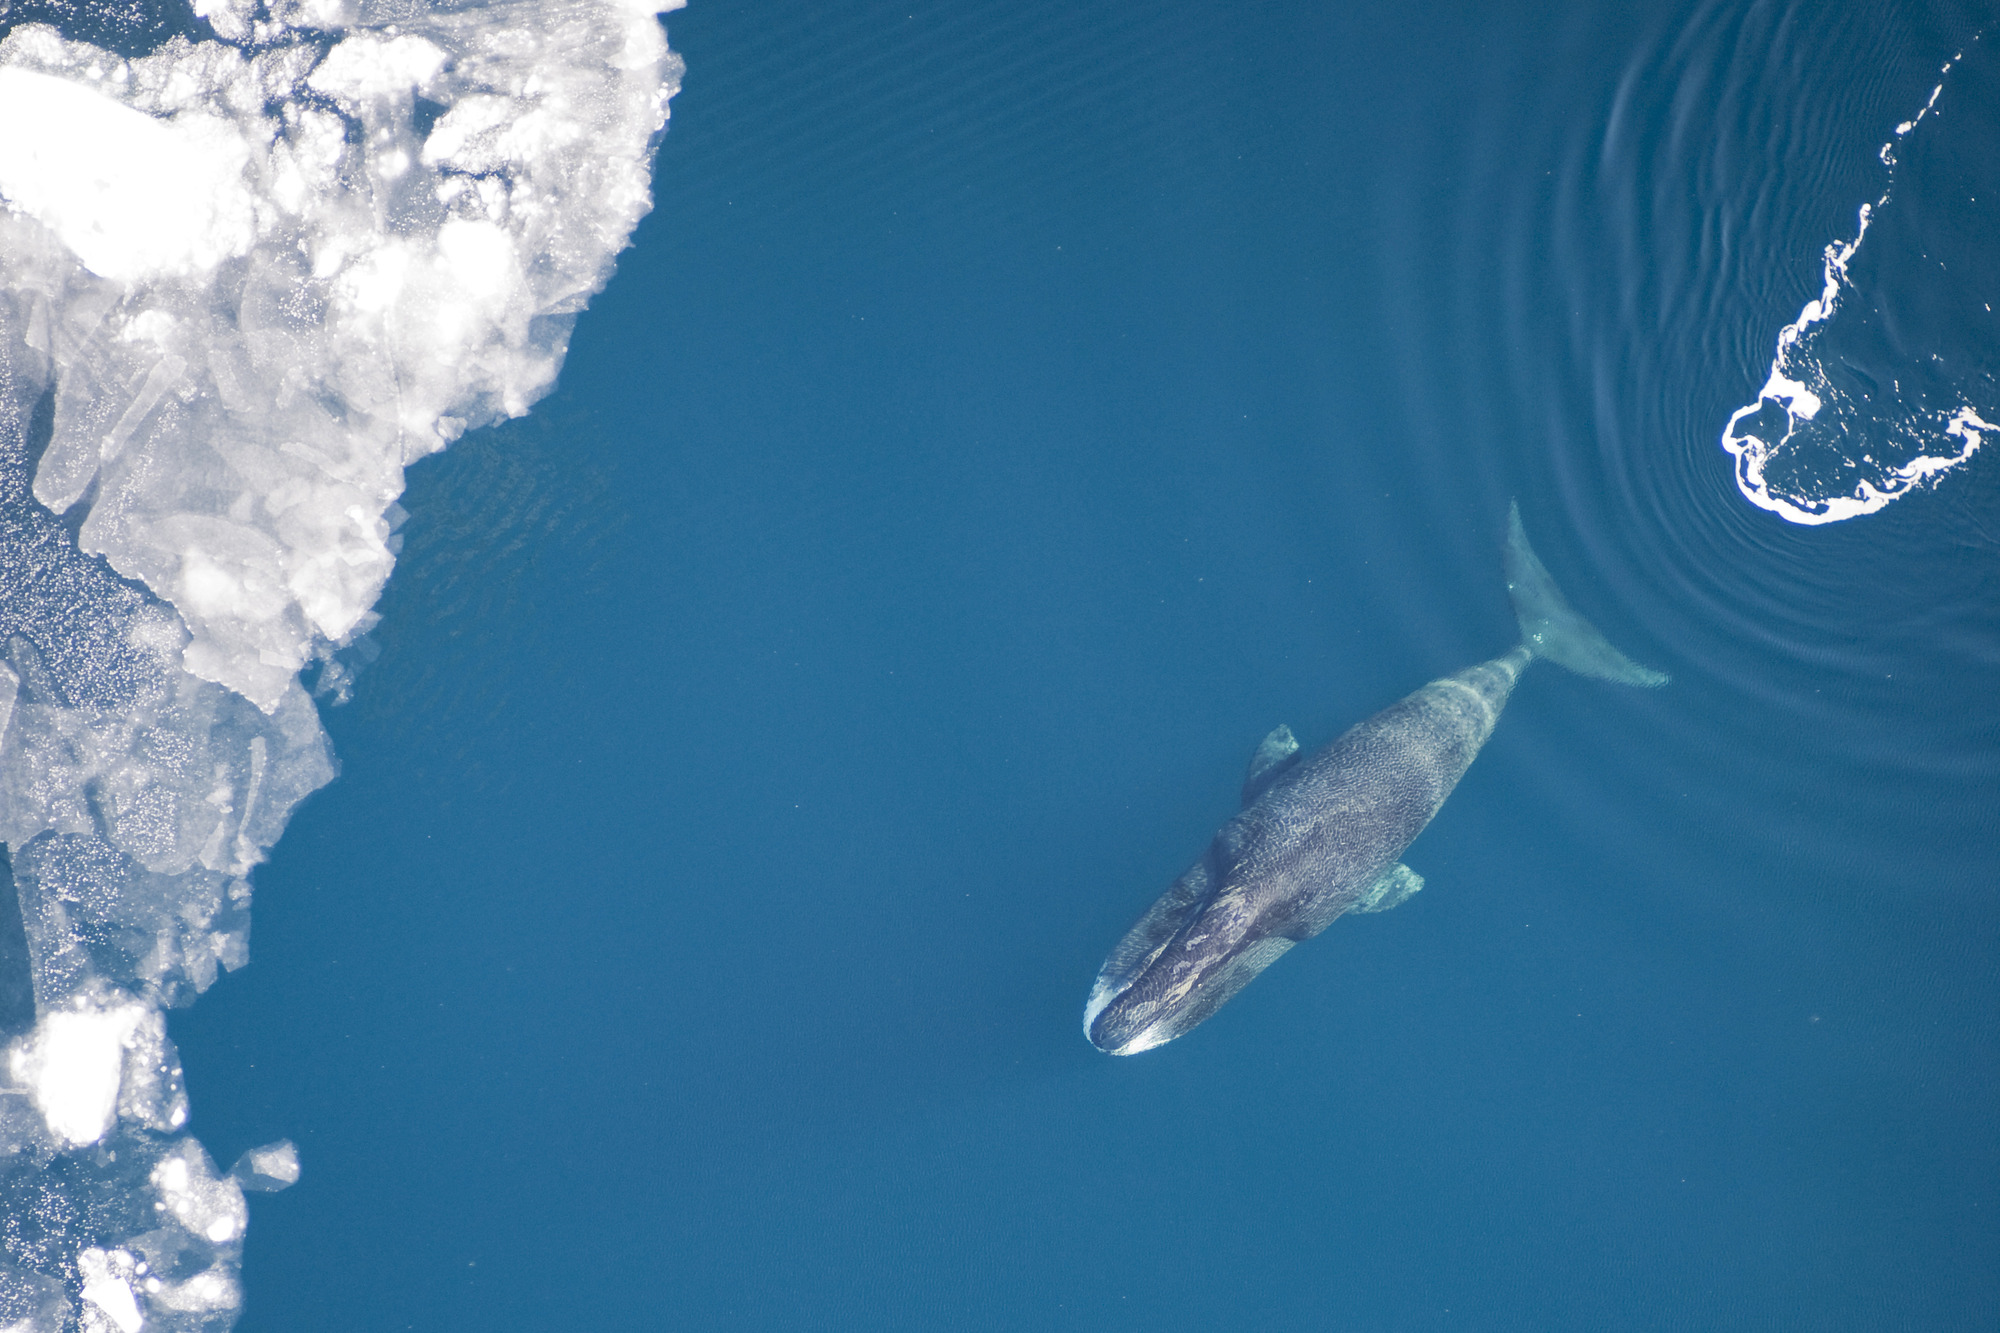 A bowhead whale swims through blue water toward ice.